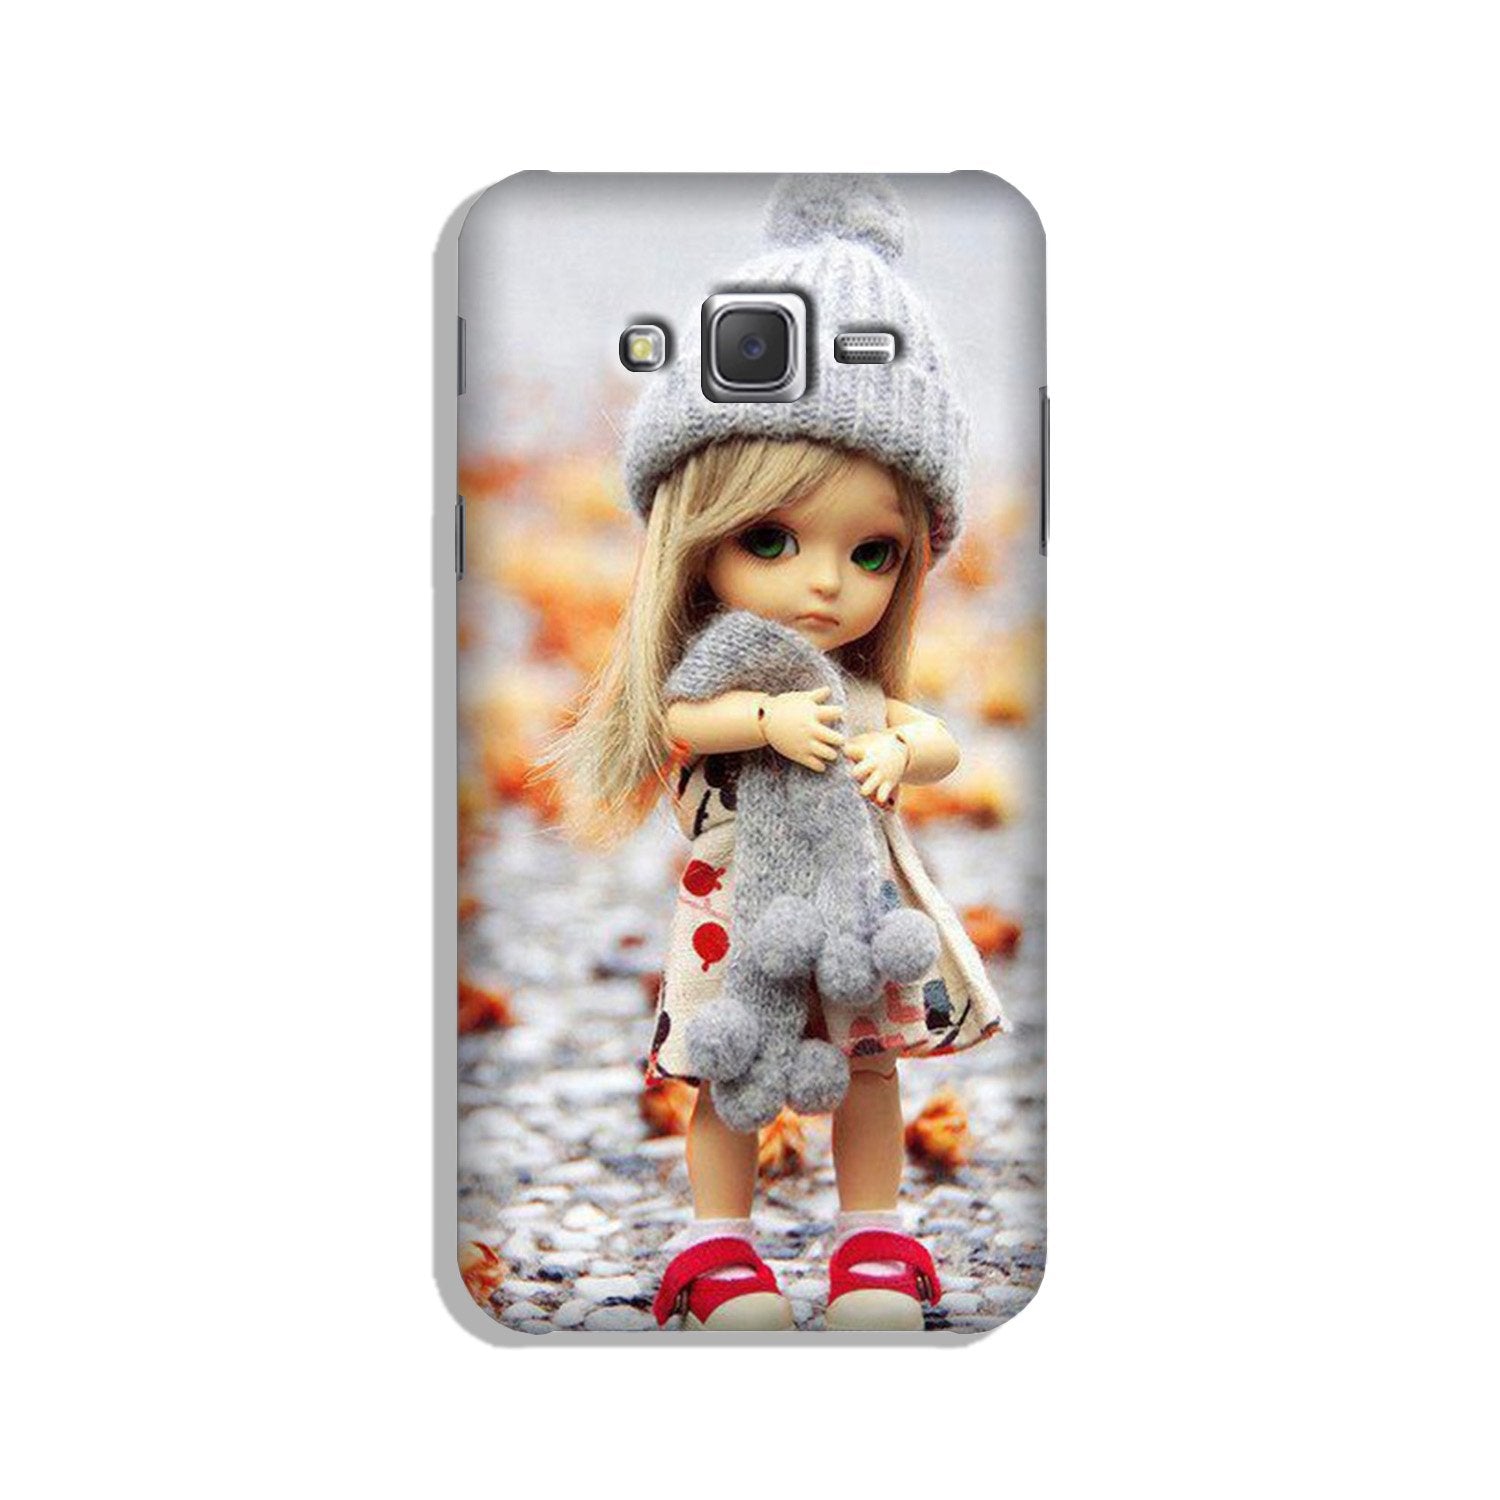 Cute Doll Case for Galaxy J3 (2015)